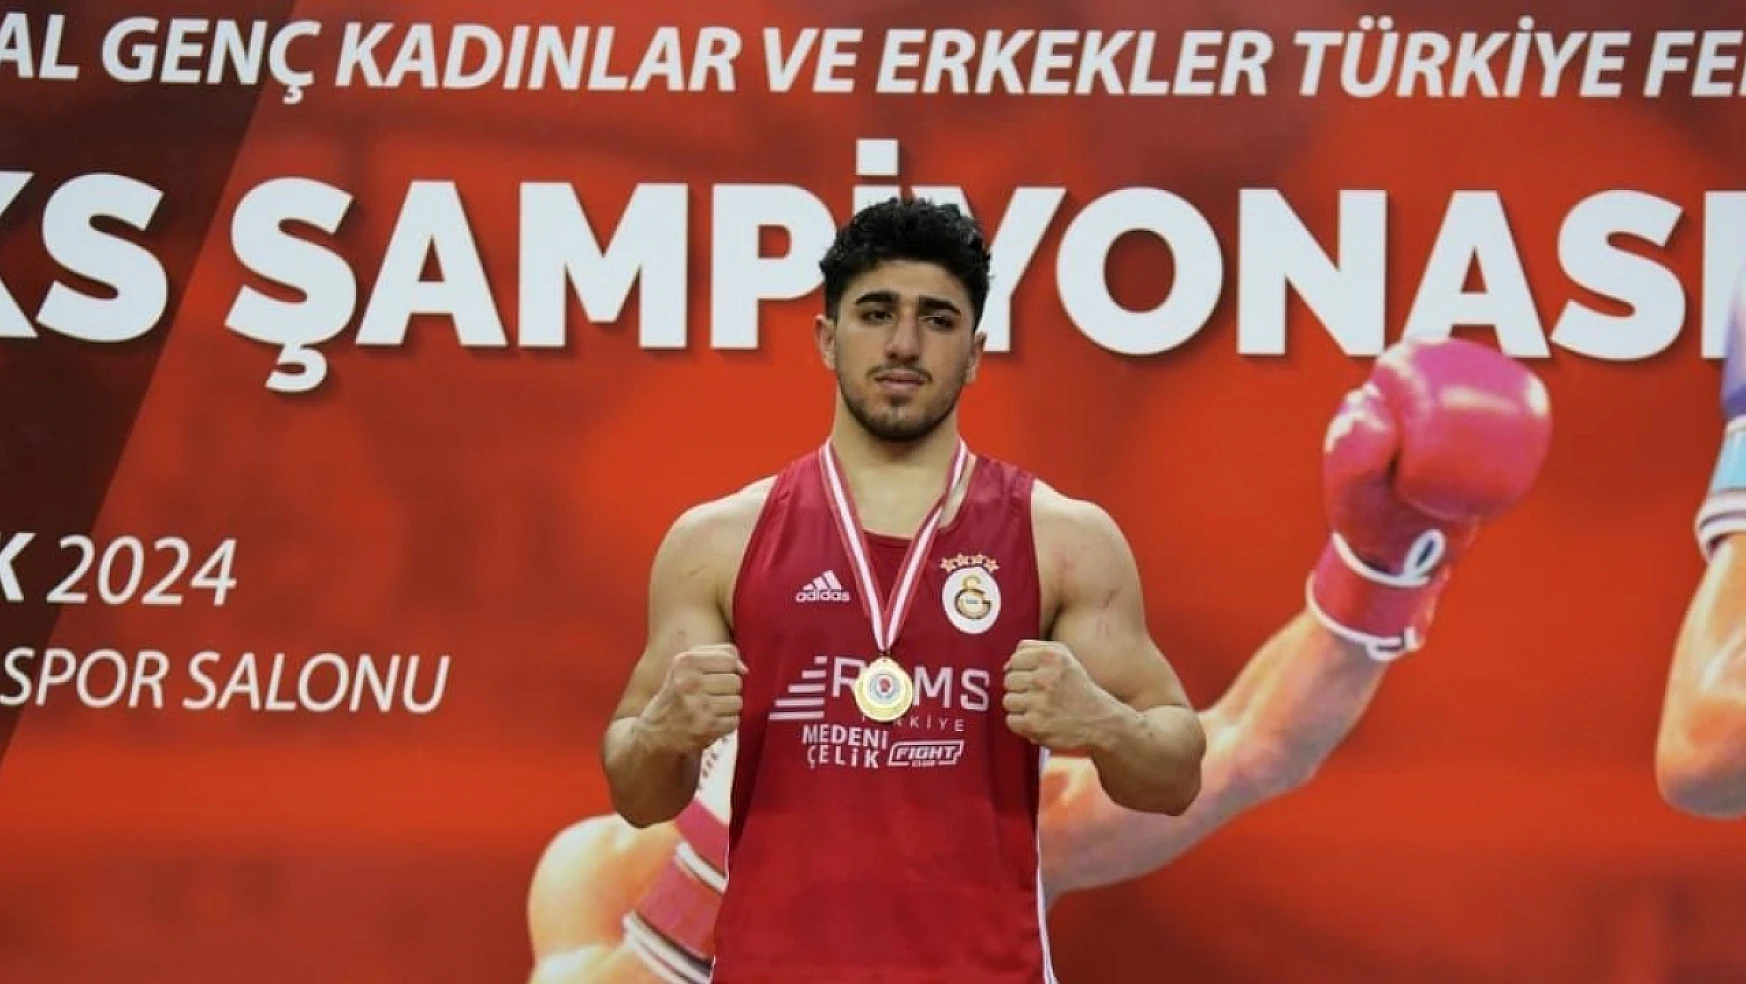 Ağır sıklette Türkiye şampiyonu oldu